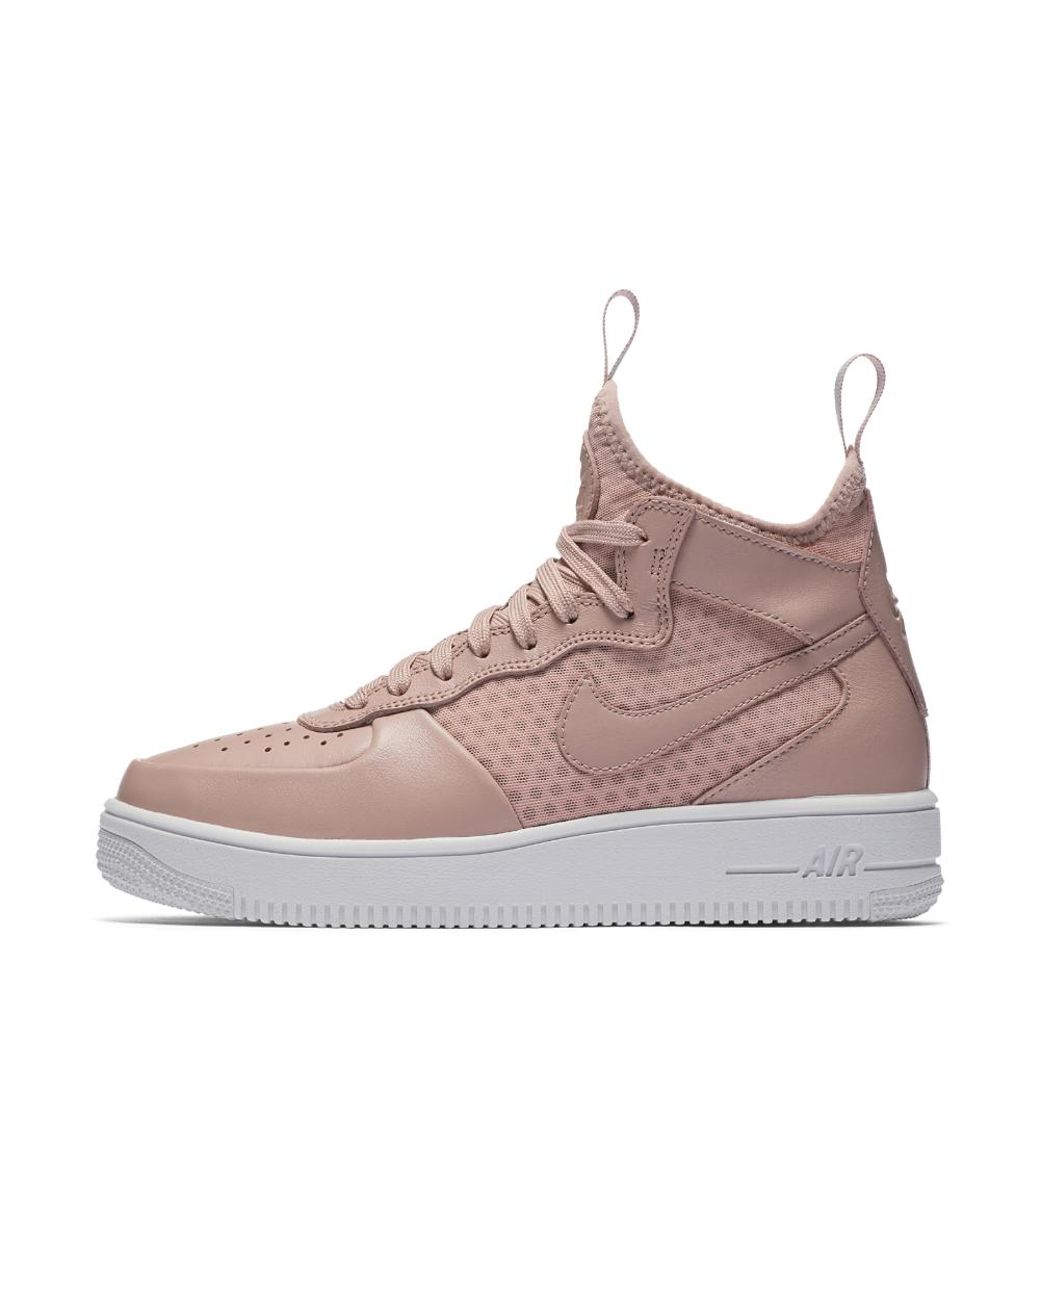 Nike Air Force 1 Ultraforce Mid Women's Shoe in Pink | Lyst